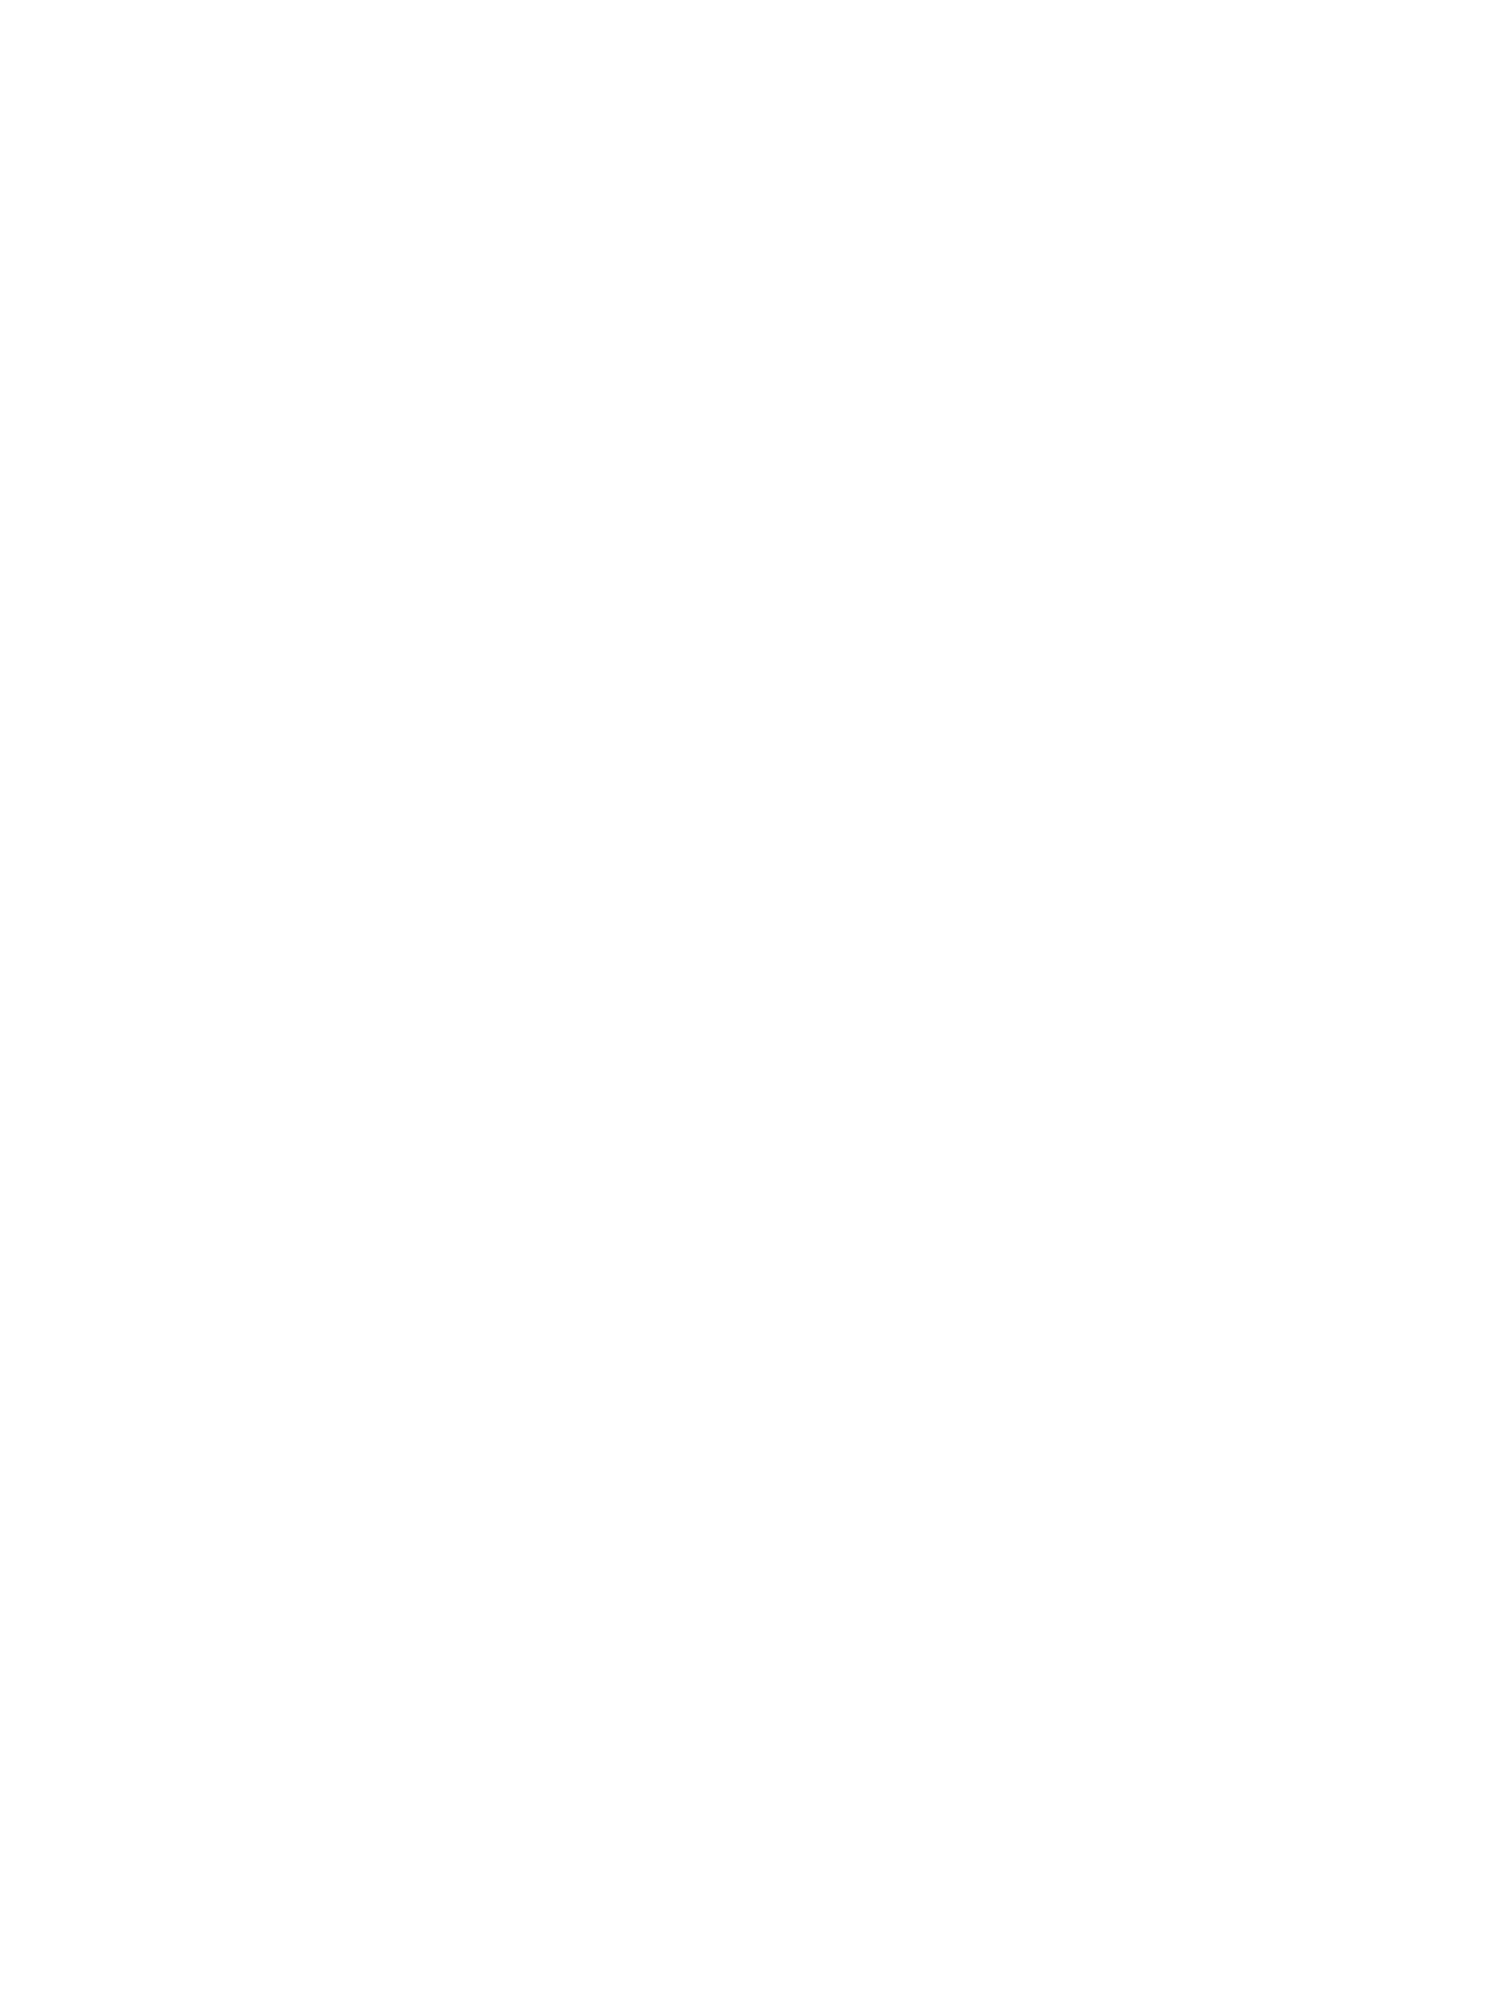 Wellwood Wedding Stationery